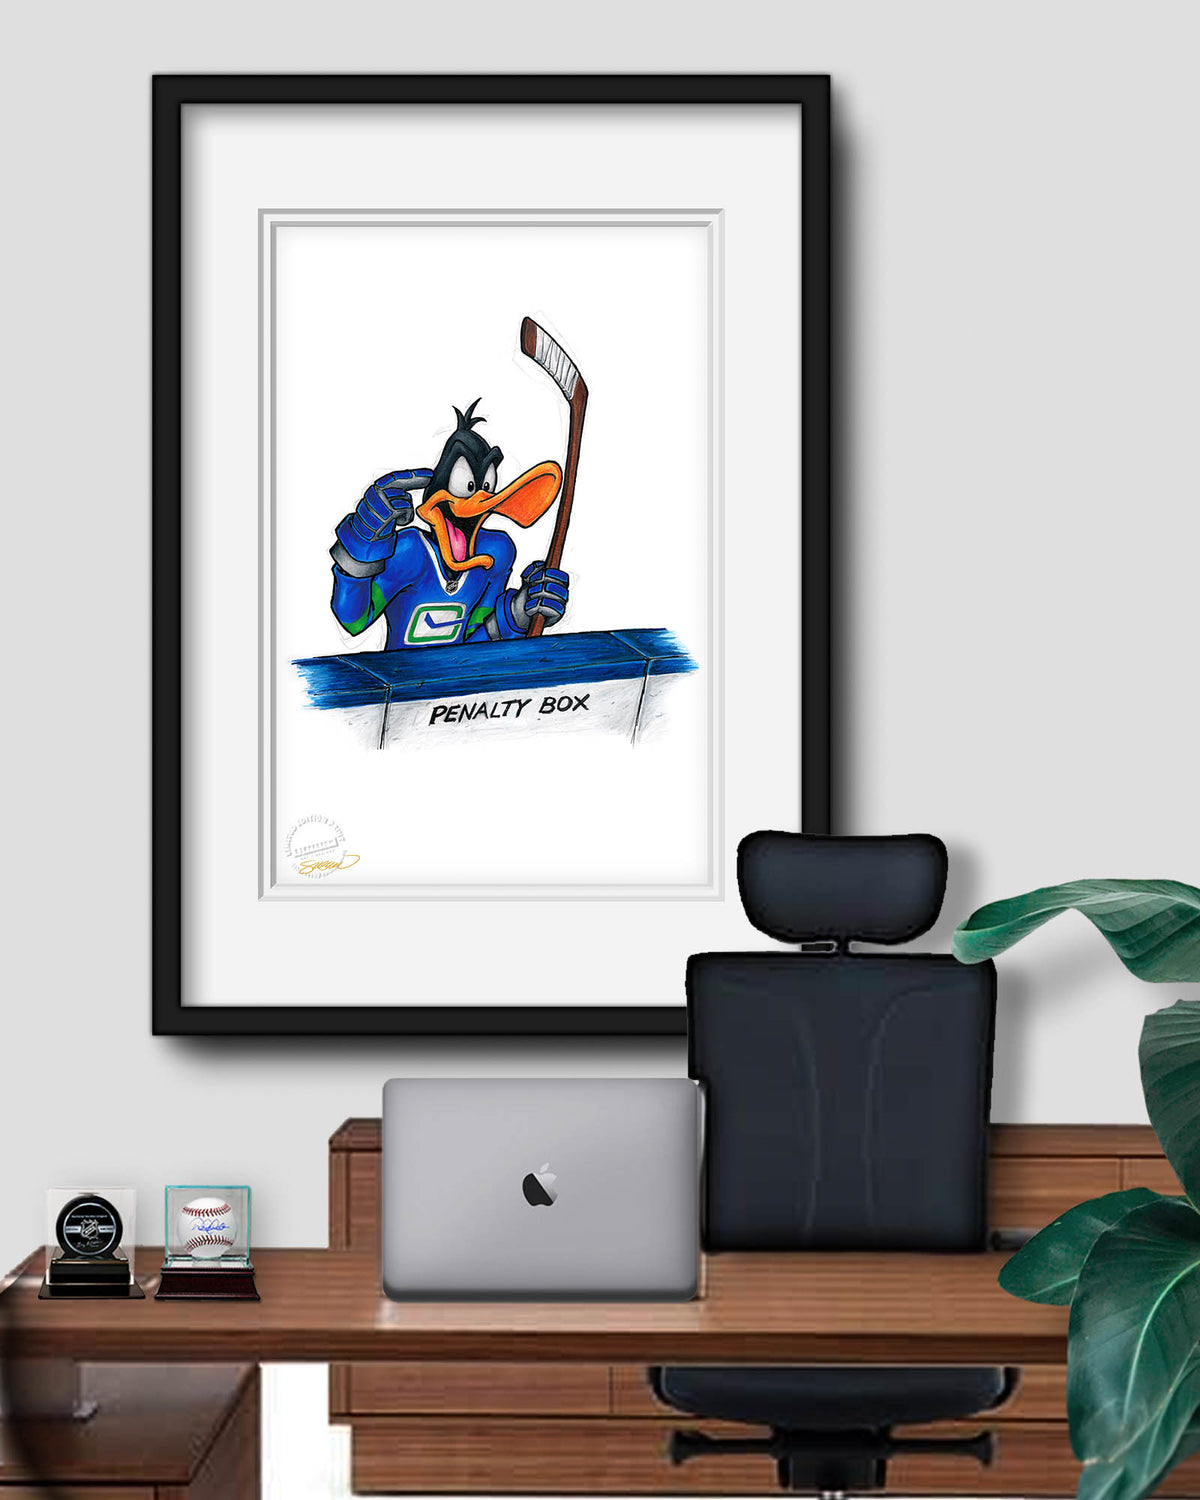 Duck Season Hockey Season x NHL Canucks Daffy Duck Limited Edition Fine Art Print